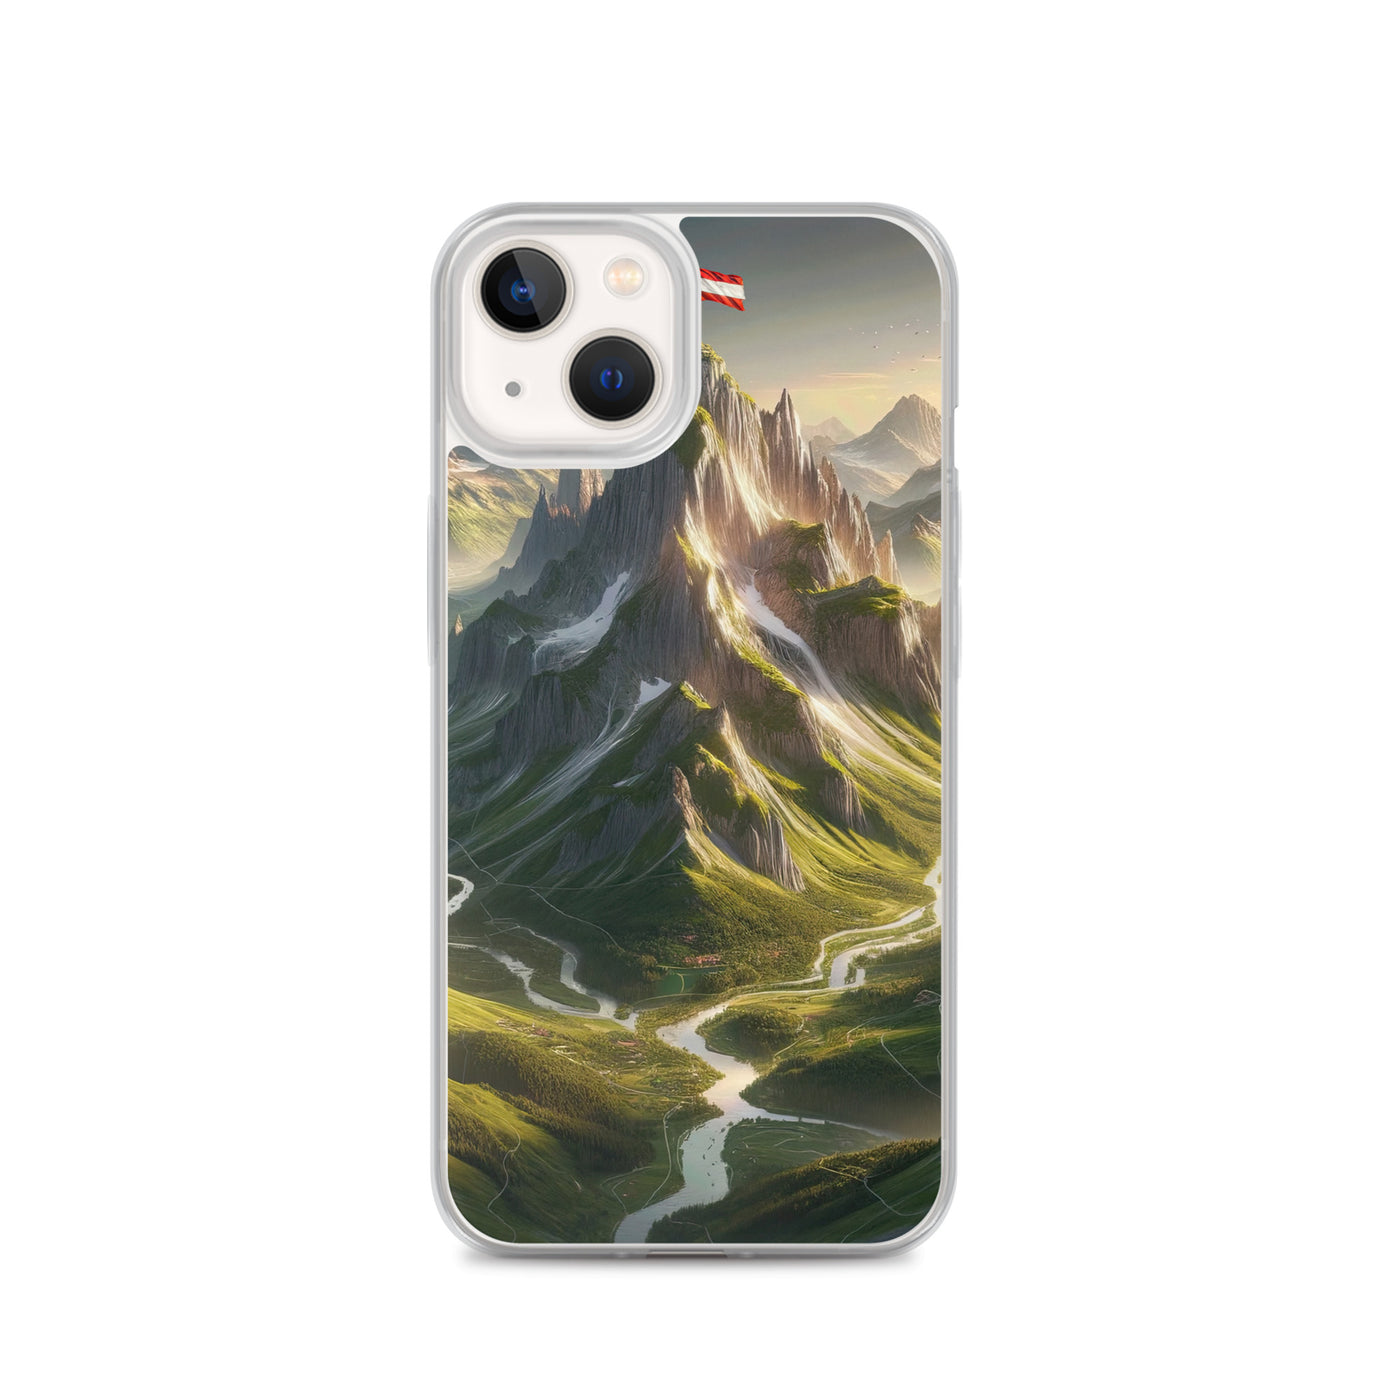 Fotorealistisches Bild der Alpen mit österreichischer Flagge, scharfen Gipfeln und grünen Tälern - iPhone Schutzhülle (durchsichtig) berge xxx yyy zzz iPhone 13